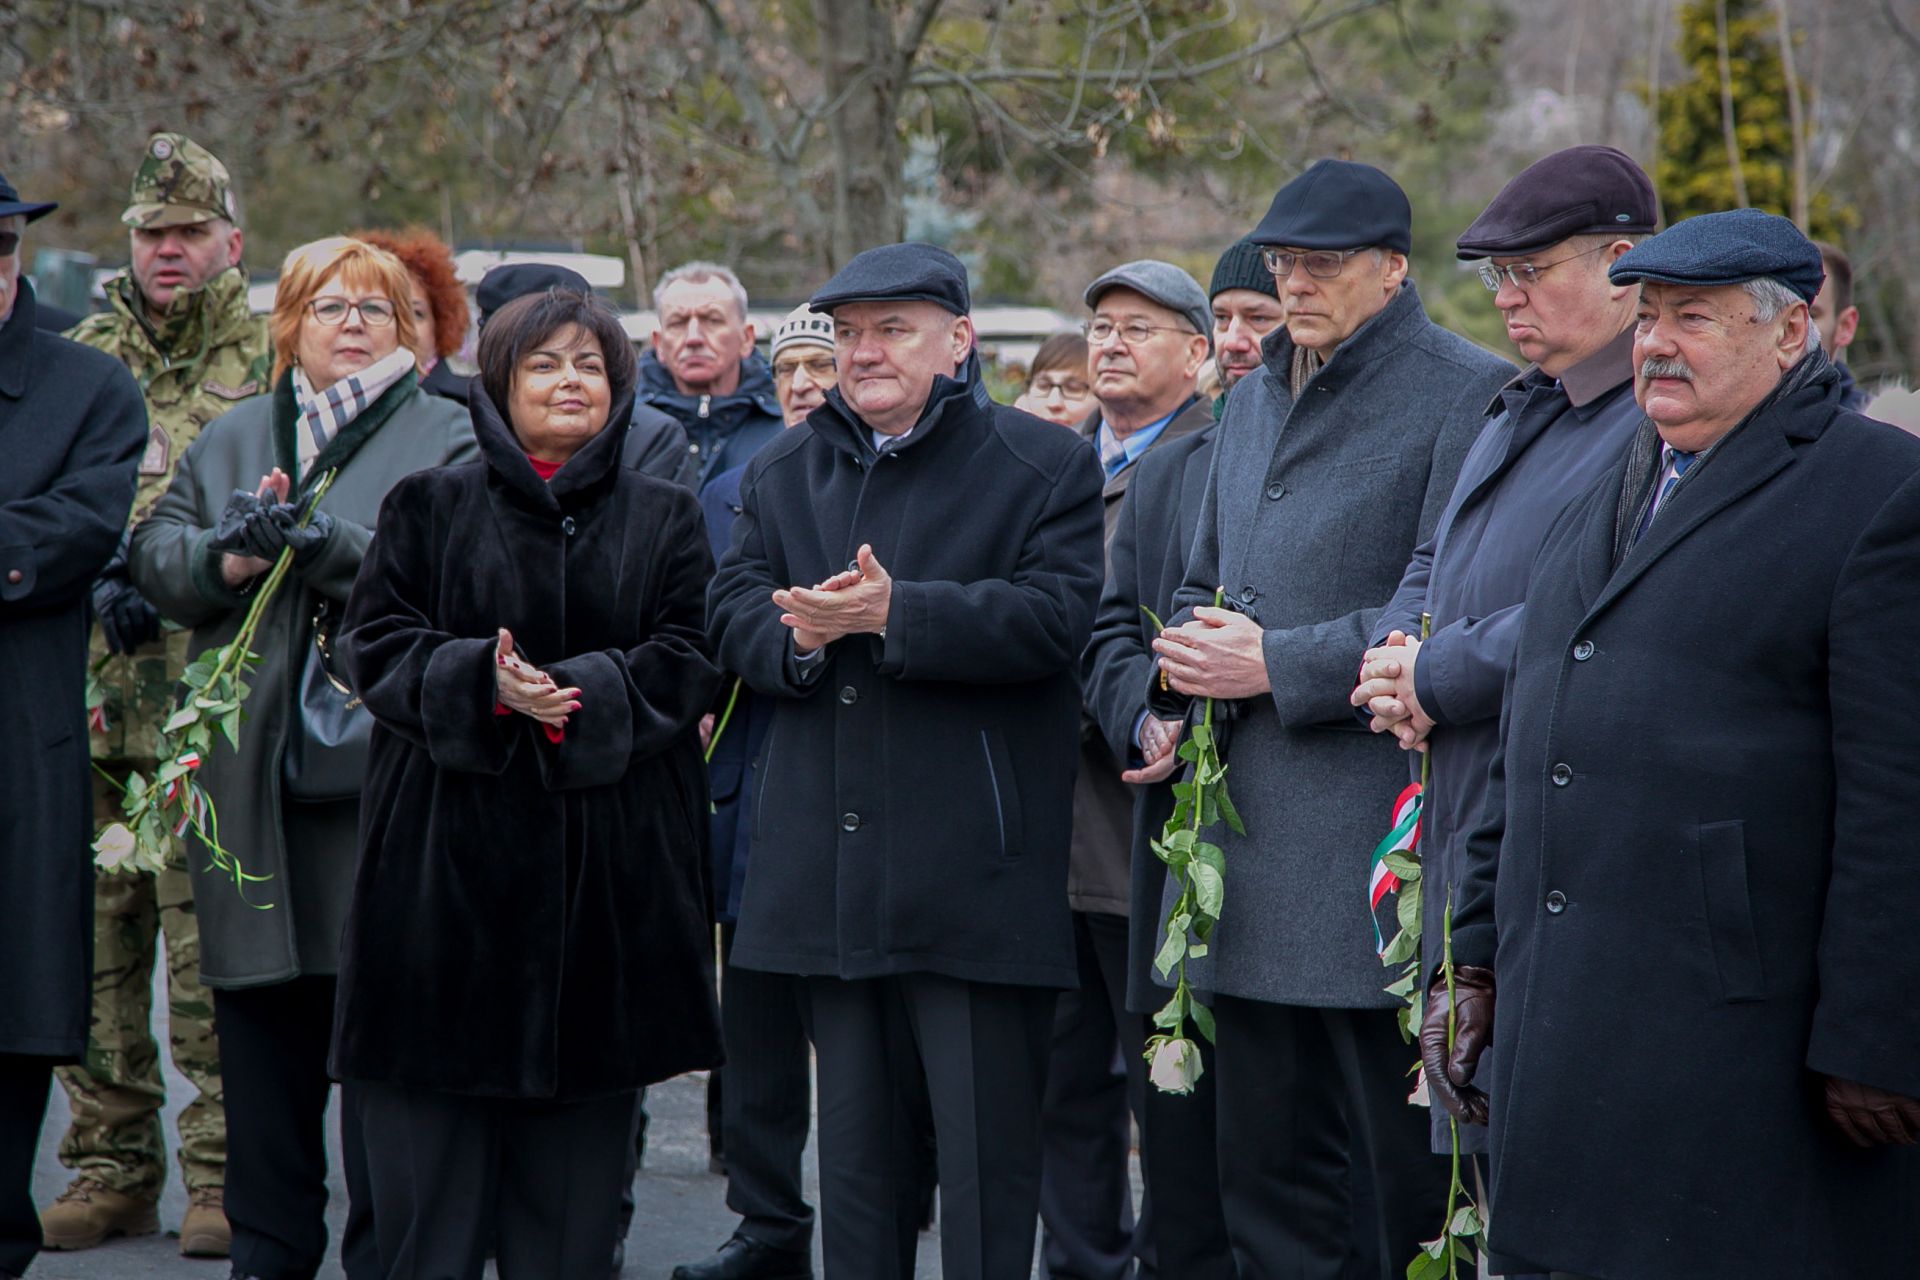 Budapest ostromának civil áldozataira emlékeztek